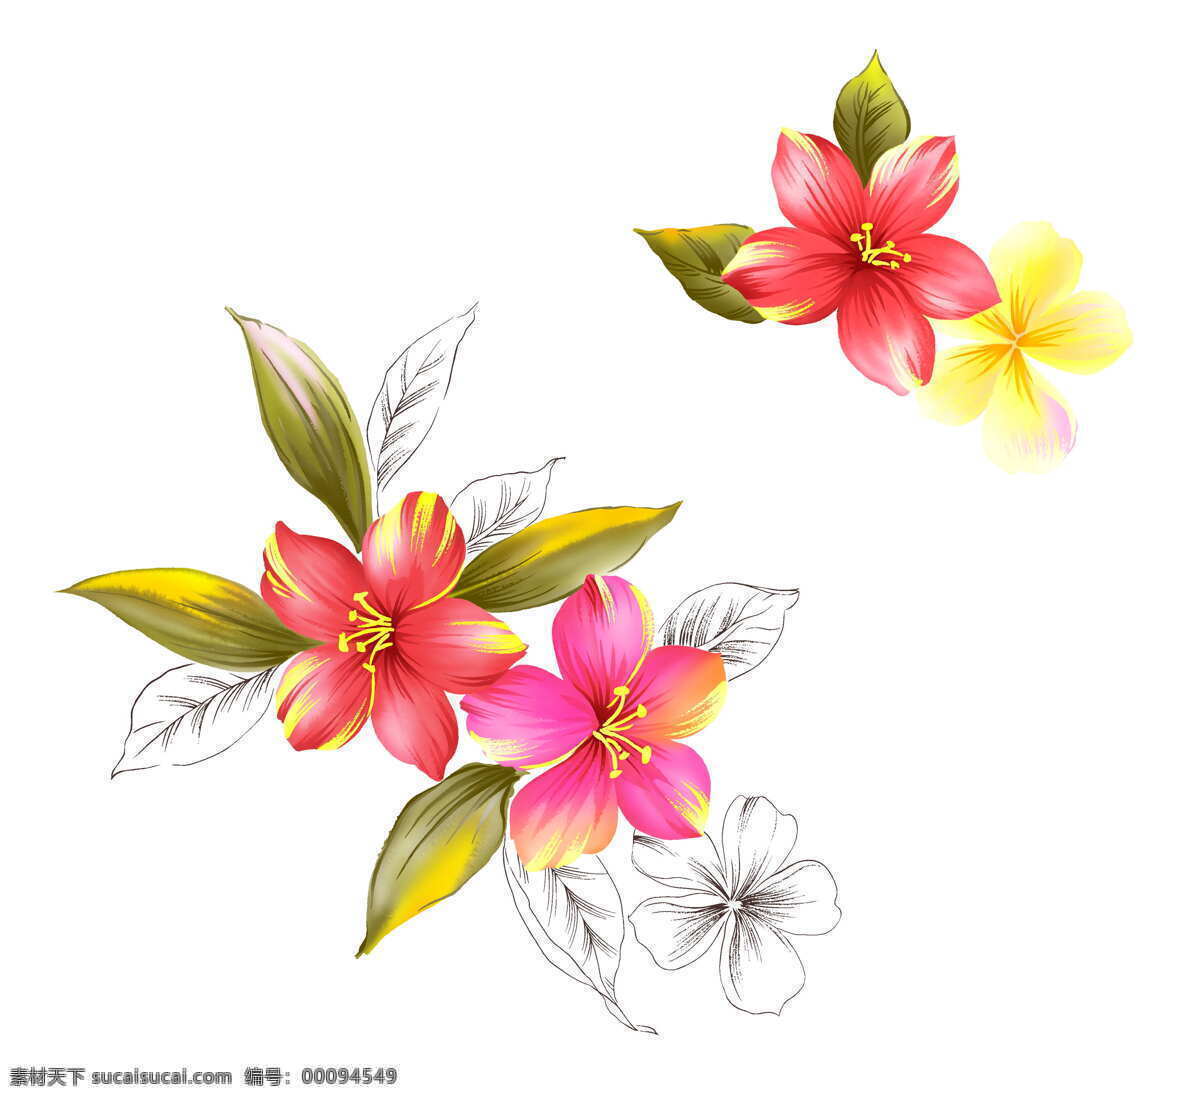 位图免费下载 服装图案 花朵 位图 叶子 优雅植物 映山红 面料图库 服装设计 图案花型